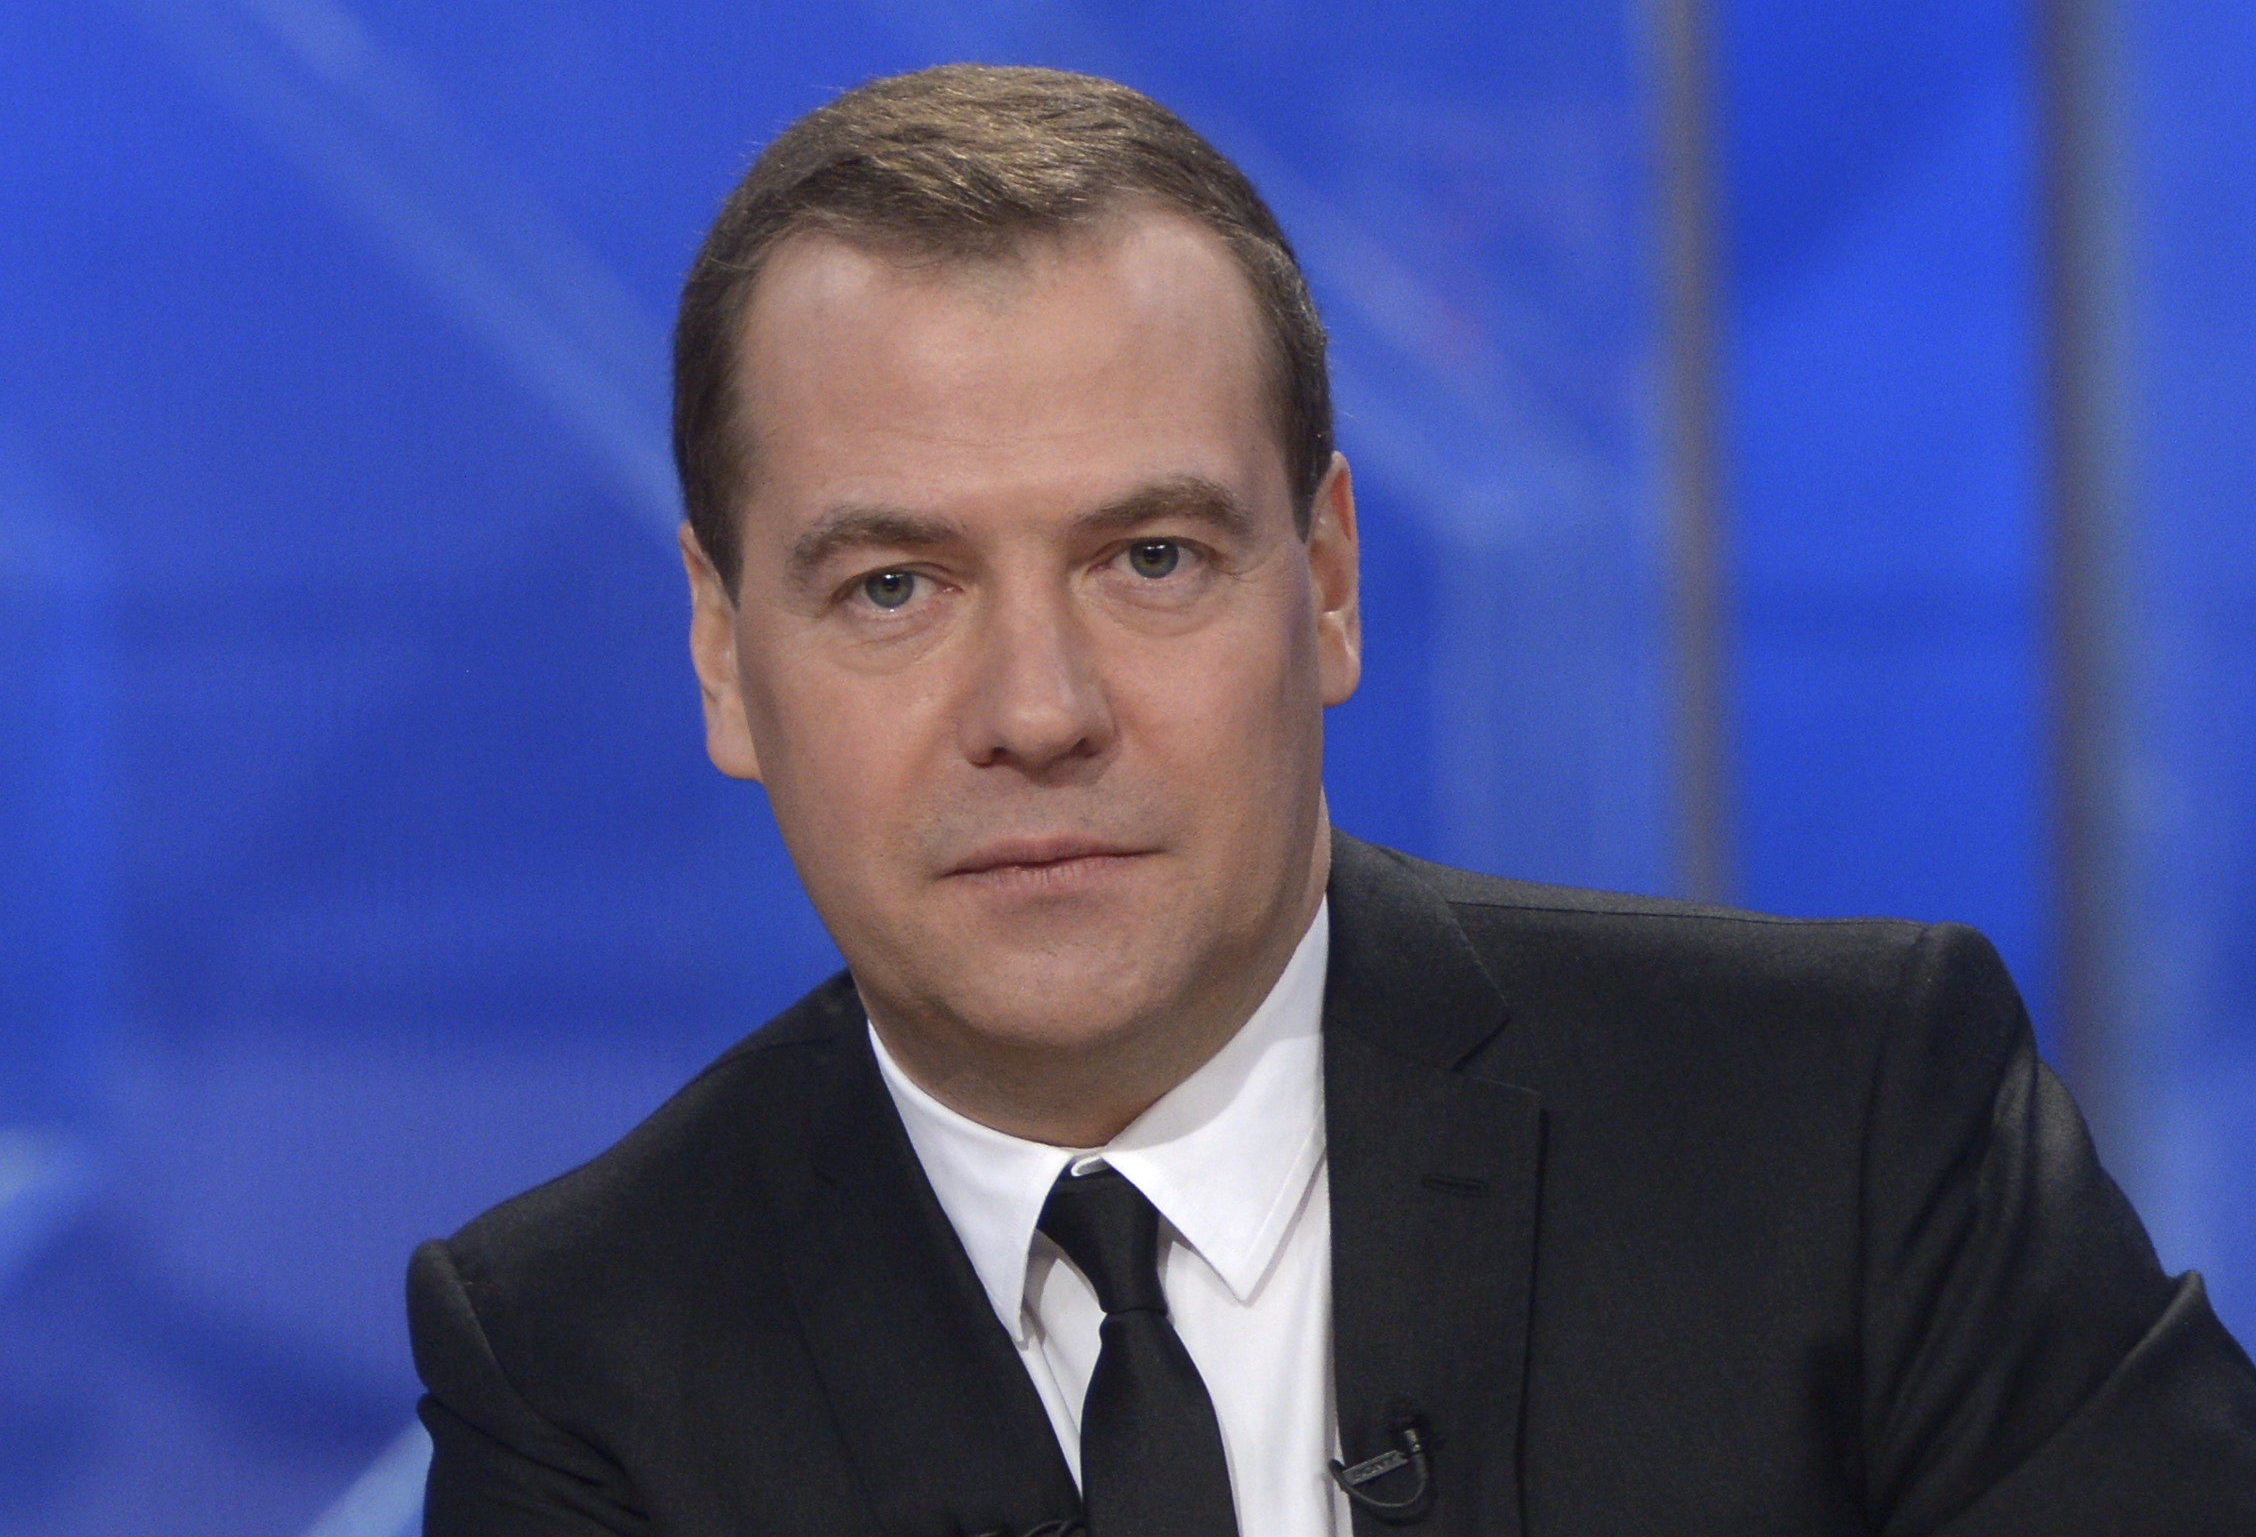 Медведев не считает актуальным введение локдауна в России